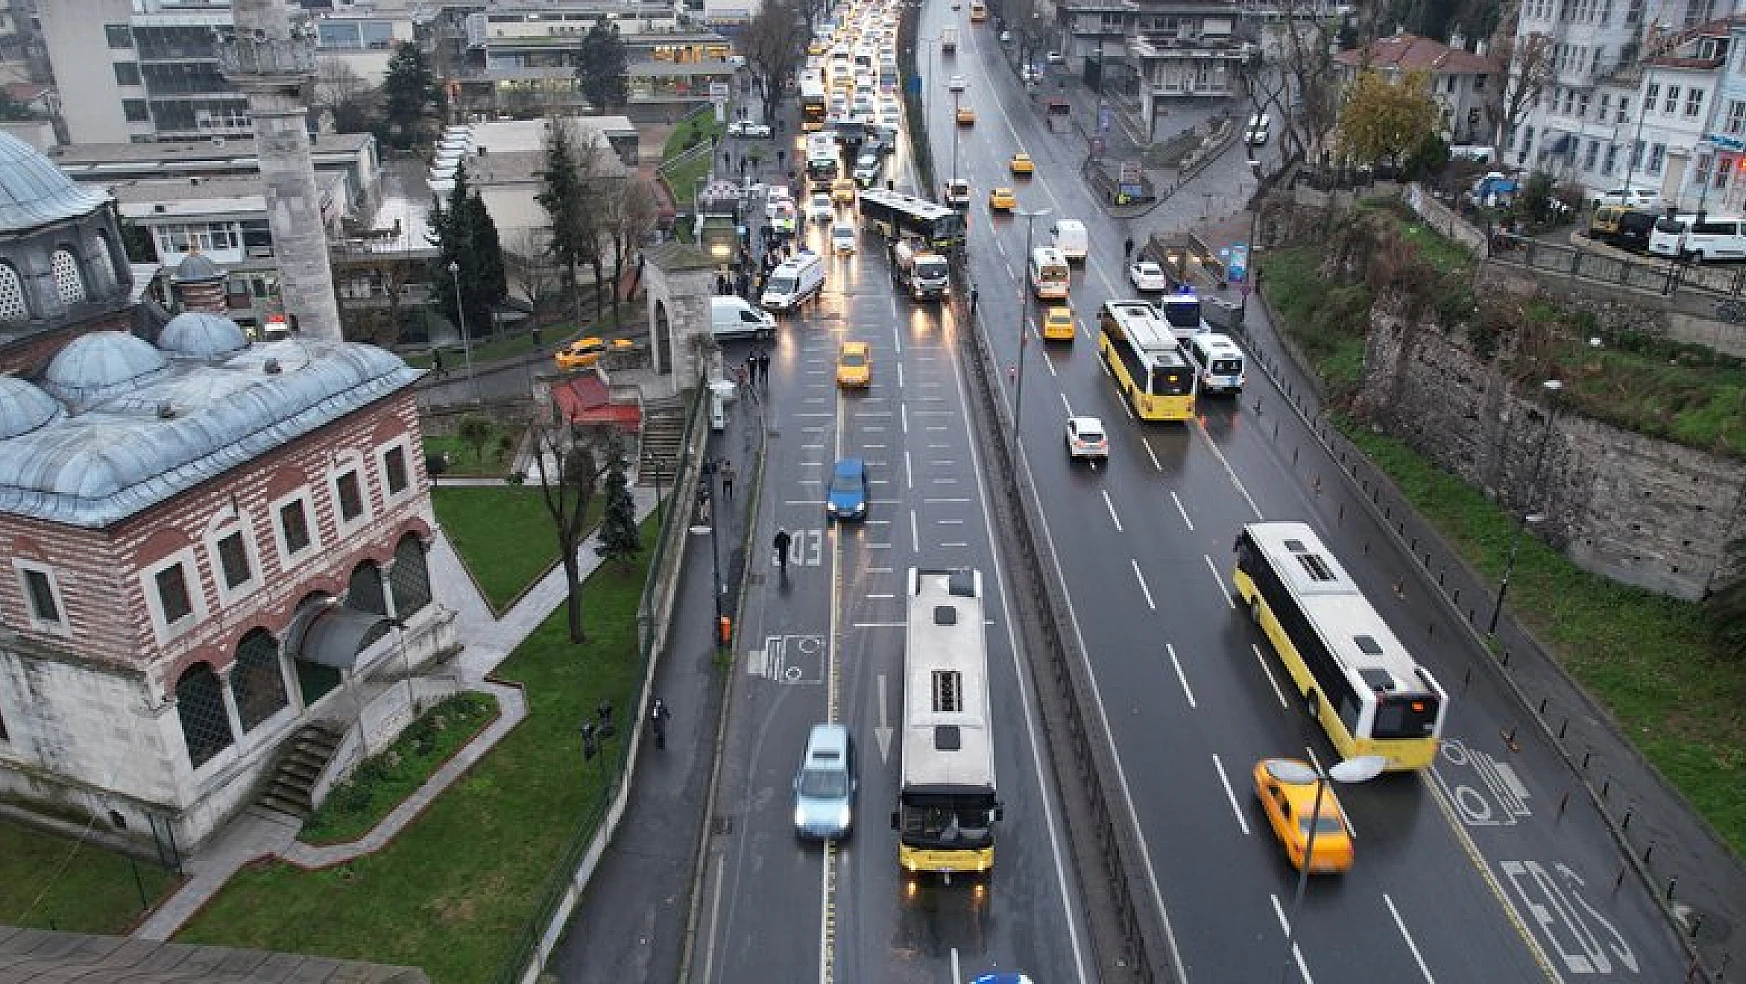 Unkapanı'nda İETT otobüsleri çarpıştı:8 yaralı